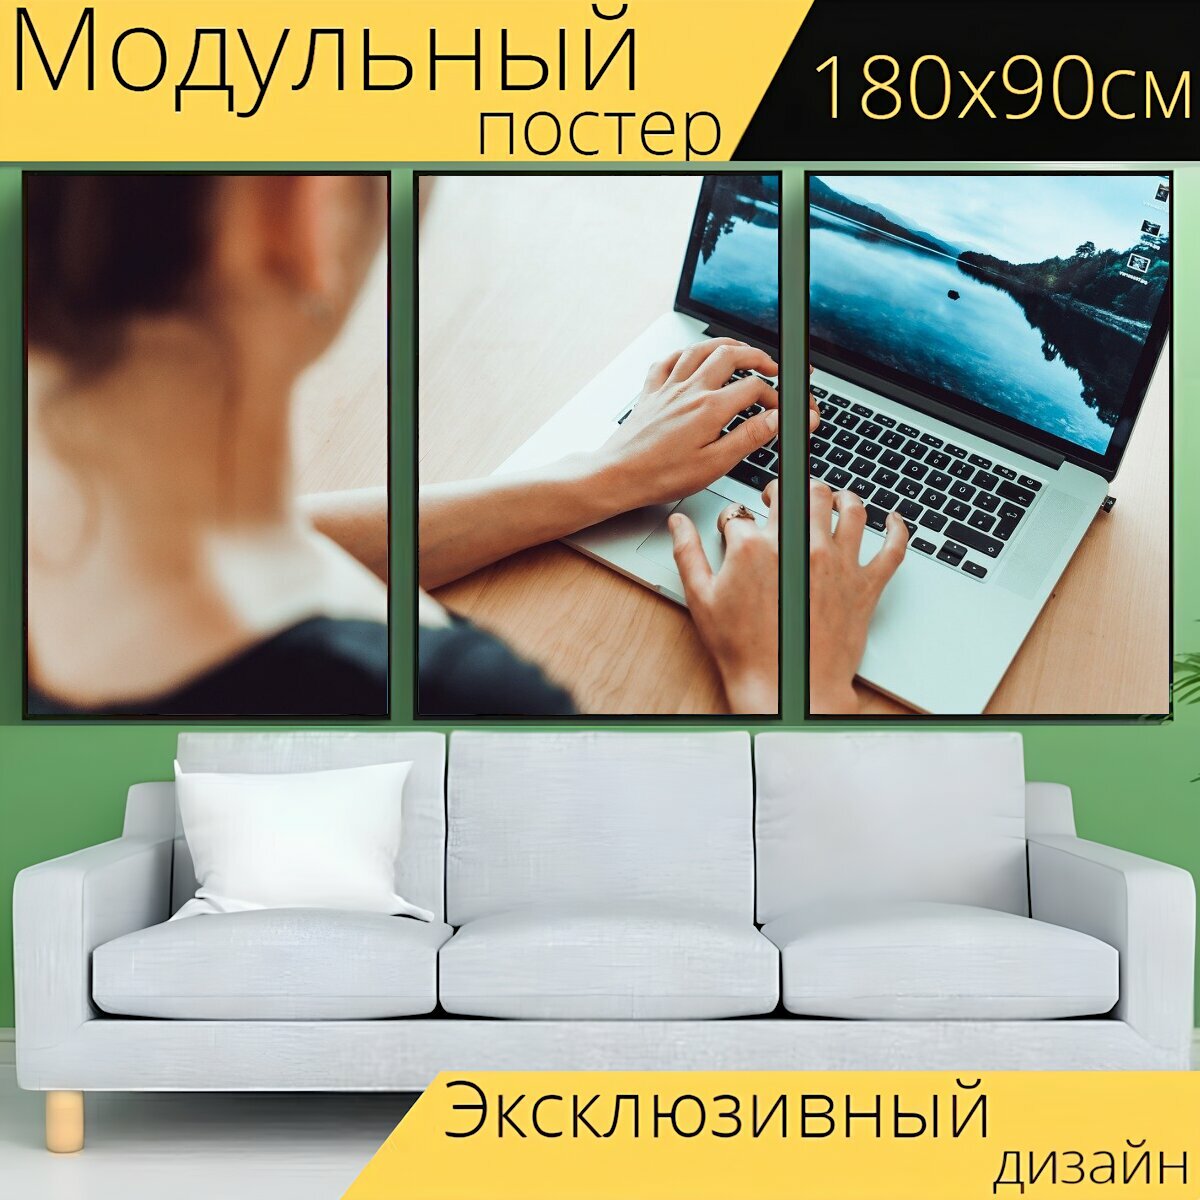 Модульный постер "Домашний офис, бизнес, компьютер" 180 x 90 см. для интерьера